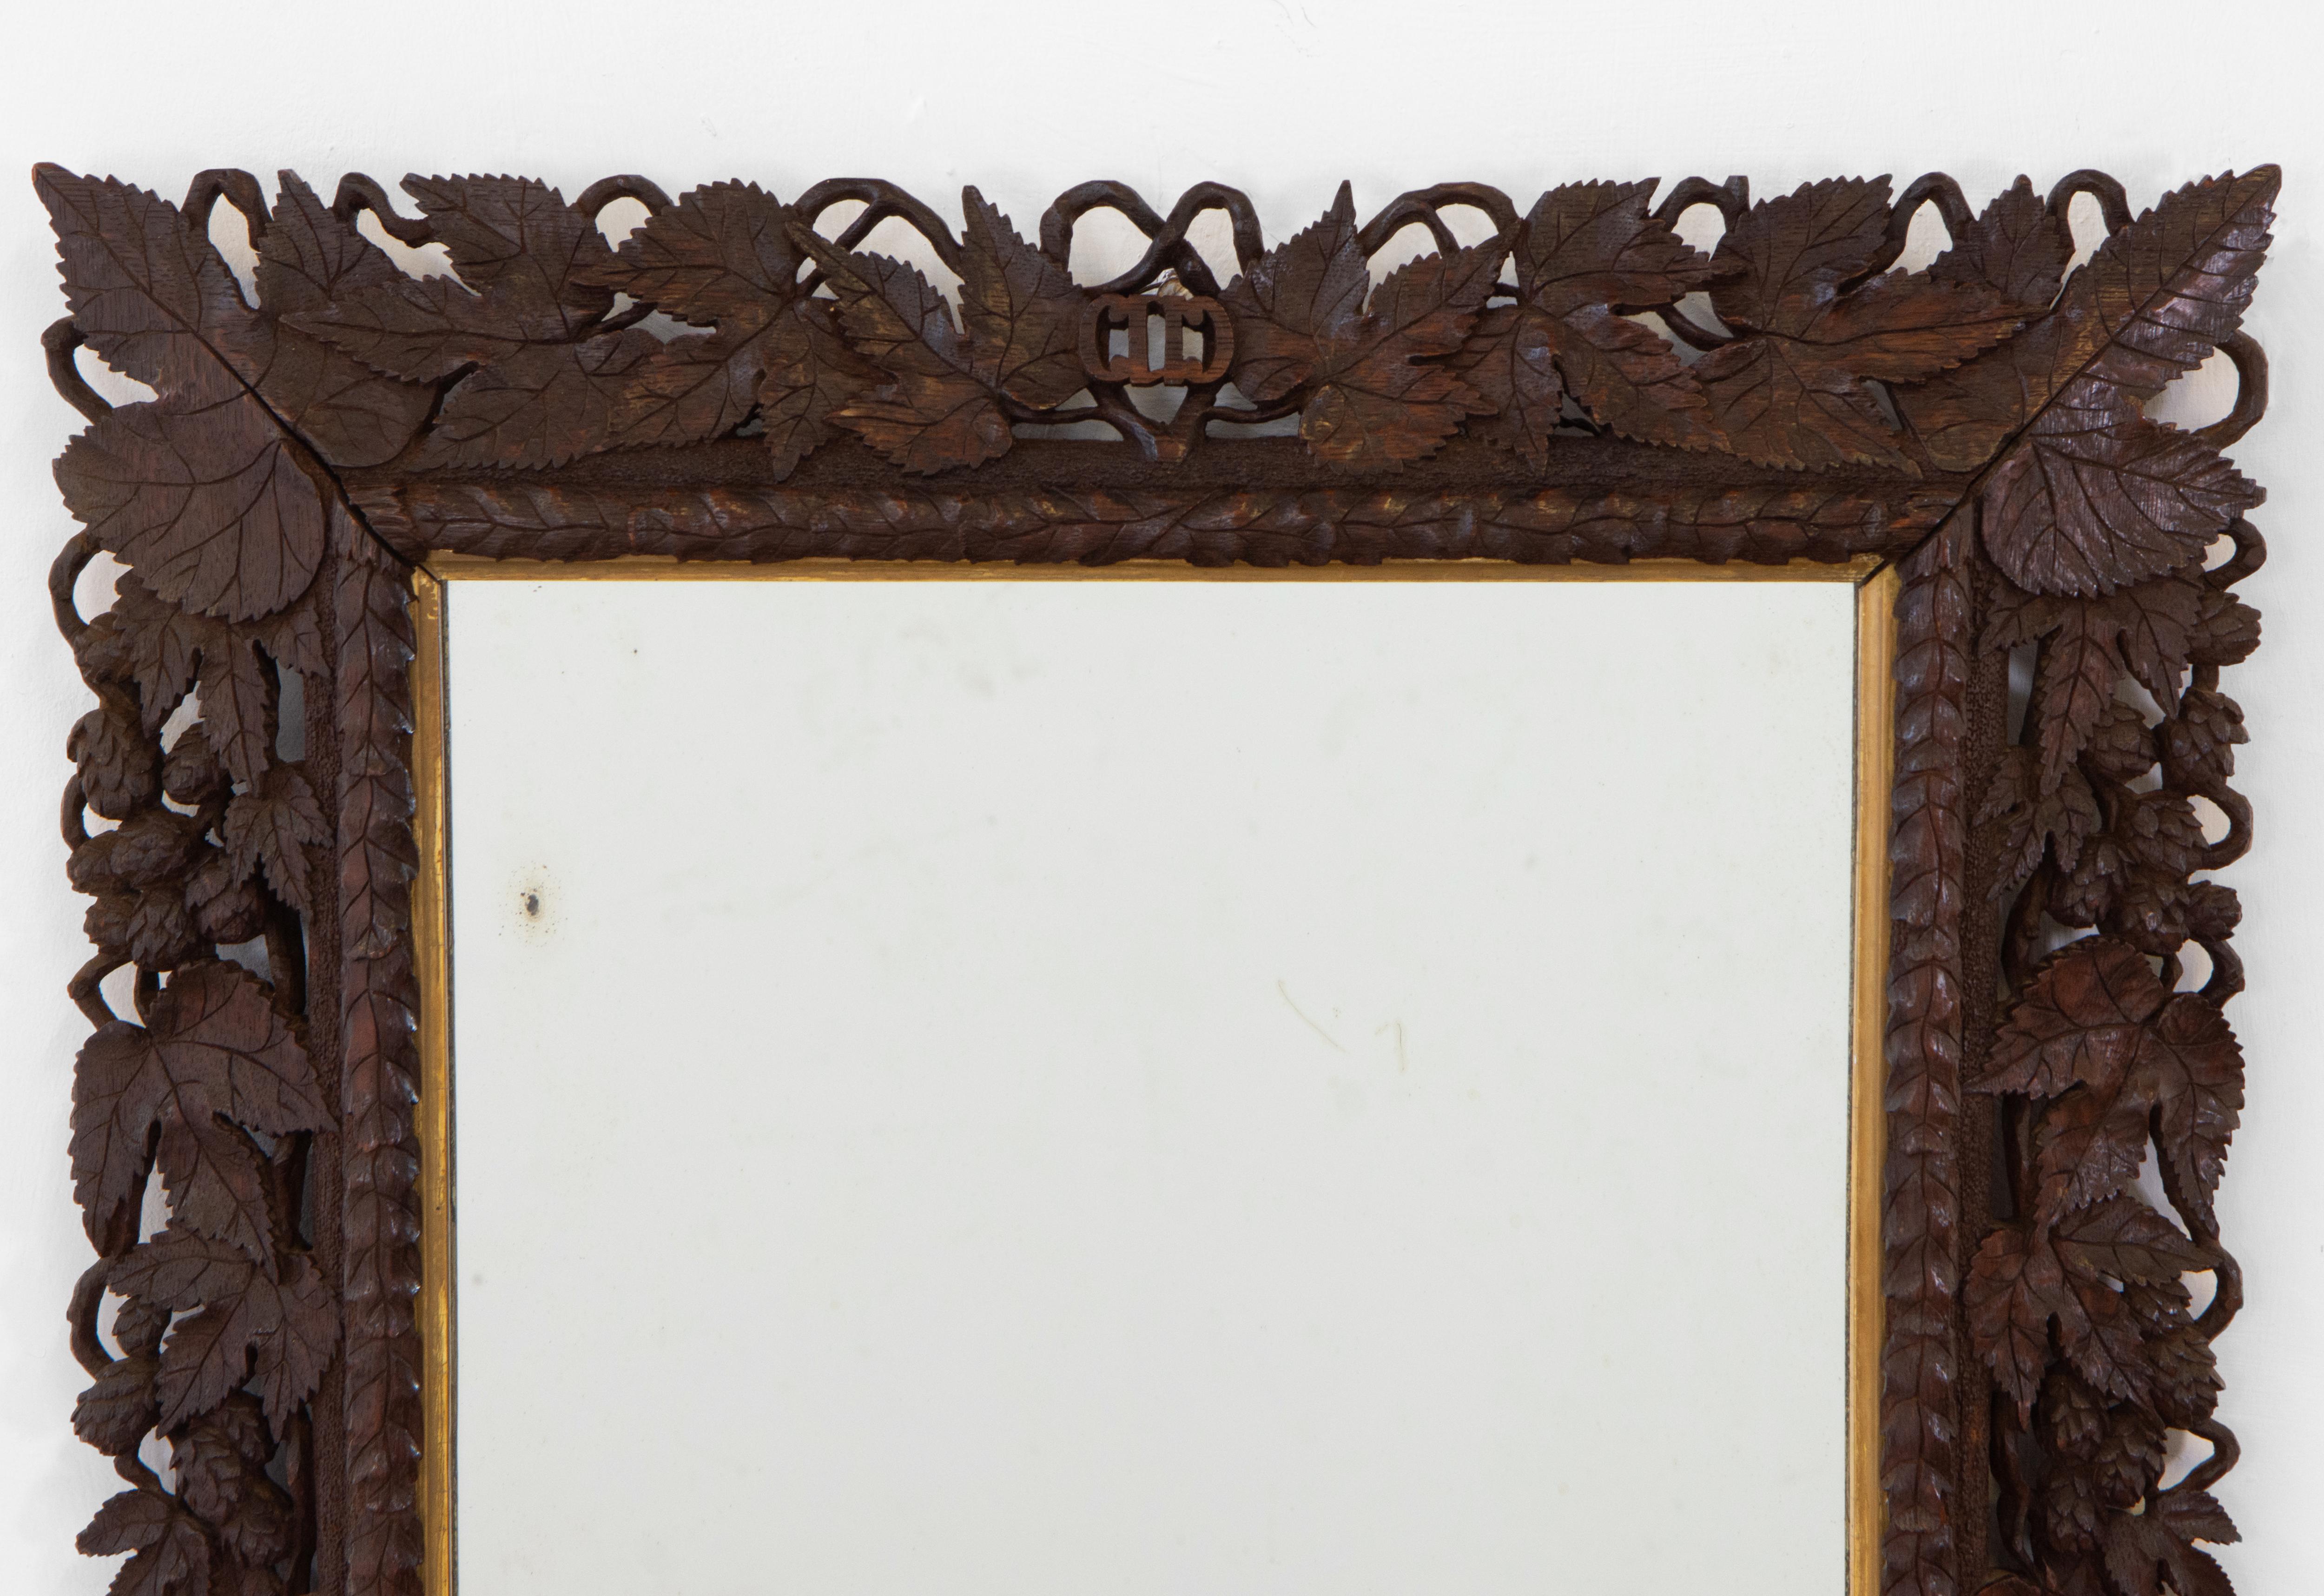 Schwarzwälder Wandspiegel aus Eiche vom Anfang des 20. Jahrhunderts, handgeschnitzt, mit Weinreben und Blättern verziert und mit einem vergoldeten Holzeinsatz versehen. Um 1910.

Die Spiegelplatte scheint original zu sein, und hat einige